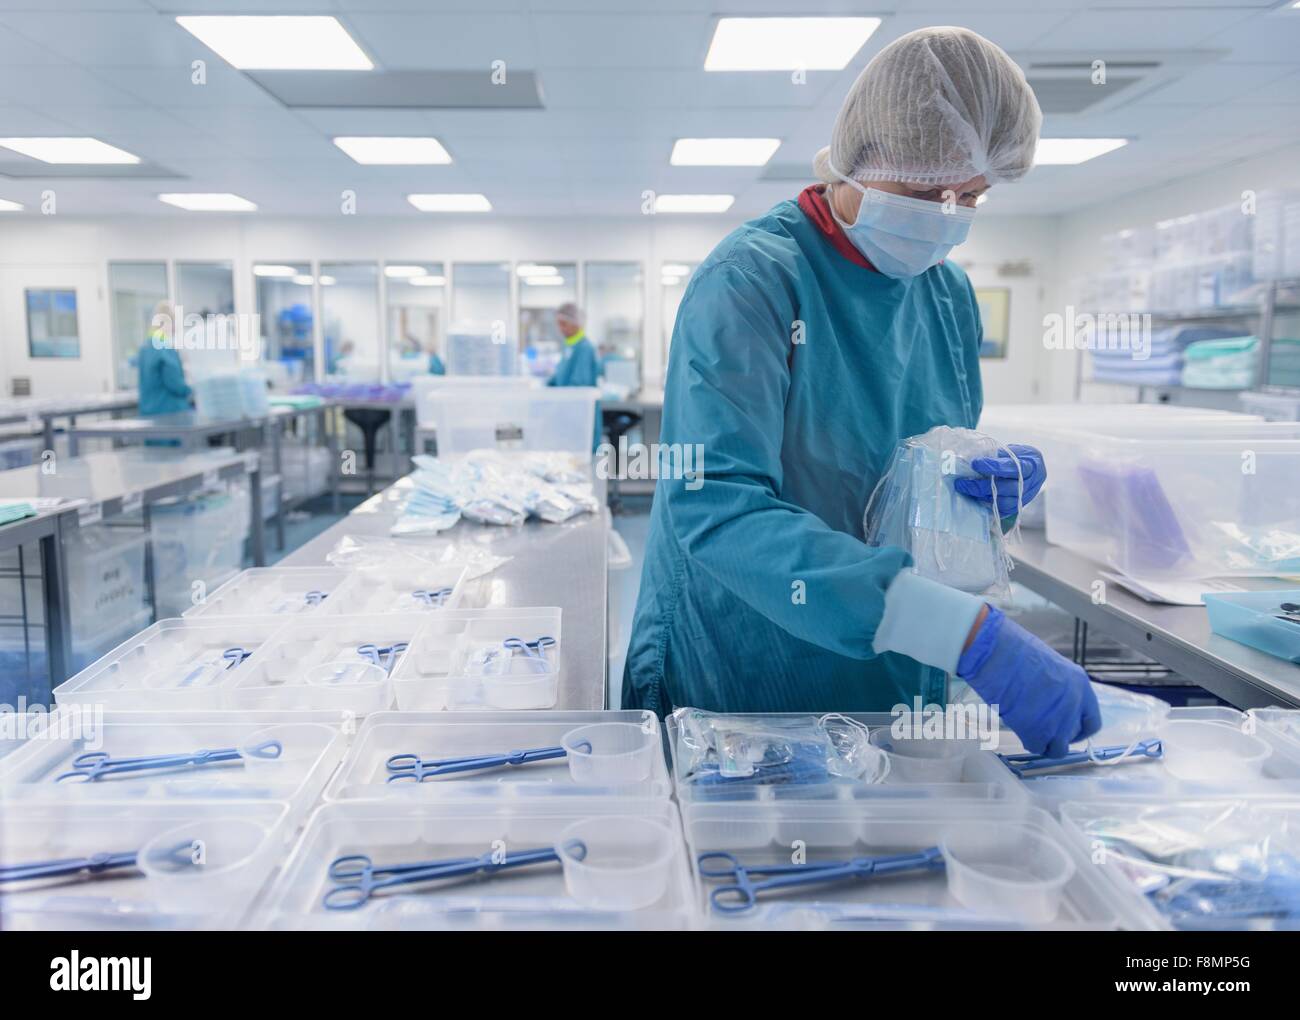 Embalaje trabajador instrumental quirúrgico en sala limpia de fábrica de instrumentos quirúrgicos Foto de stock